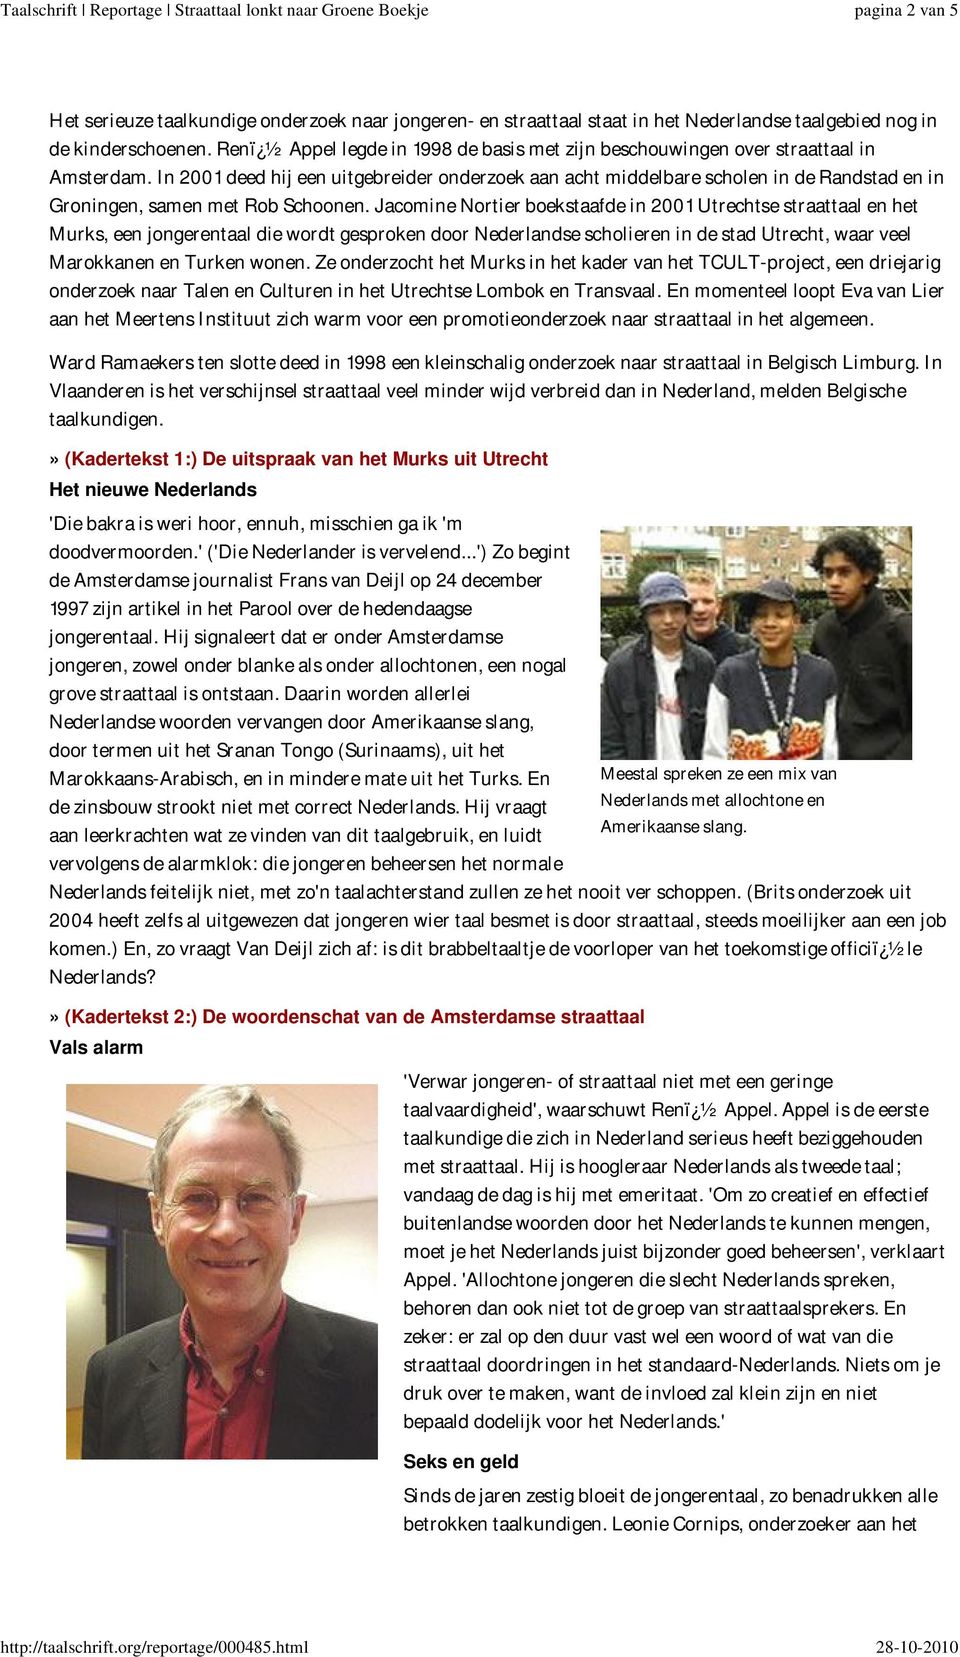 In 2001 deed hij een uitgebreider onderzoek aan acht middelbare scholen in de Randstad en in Groningen, samen met Rob Schoonen.